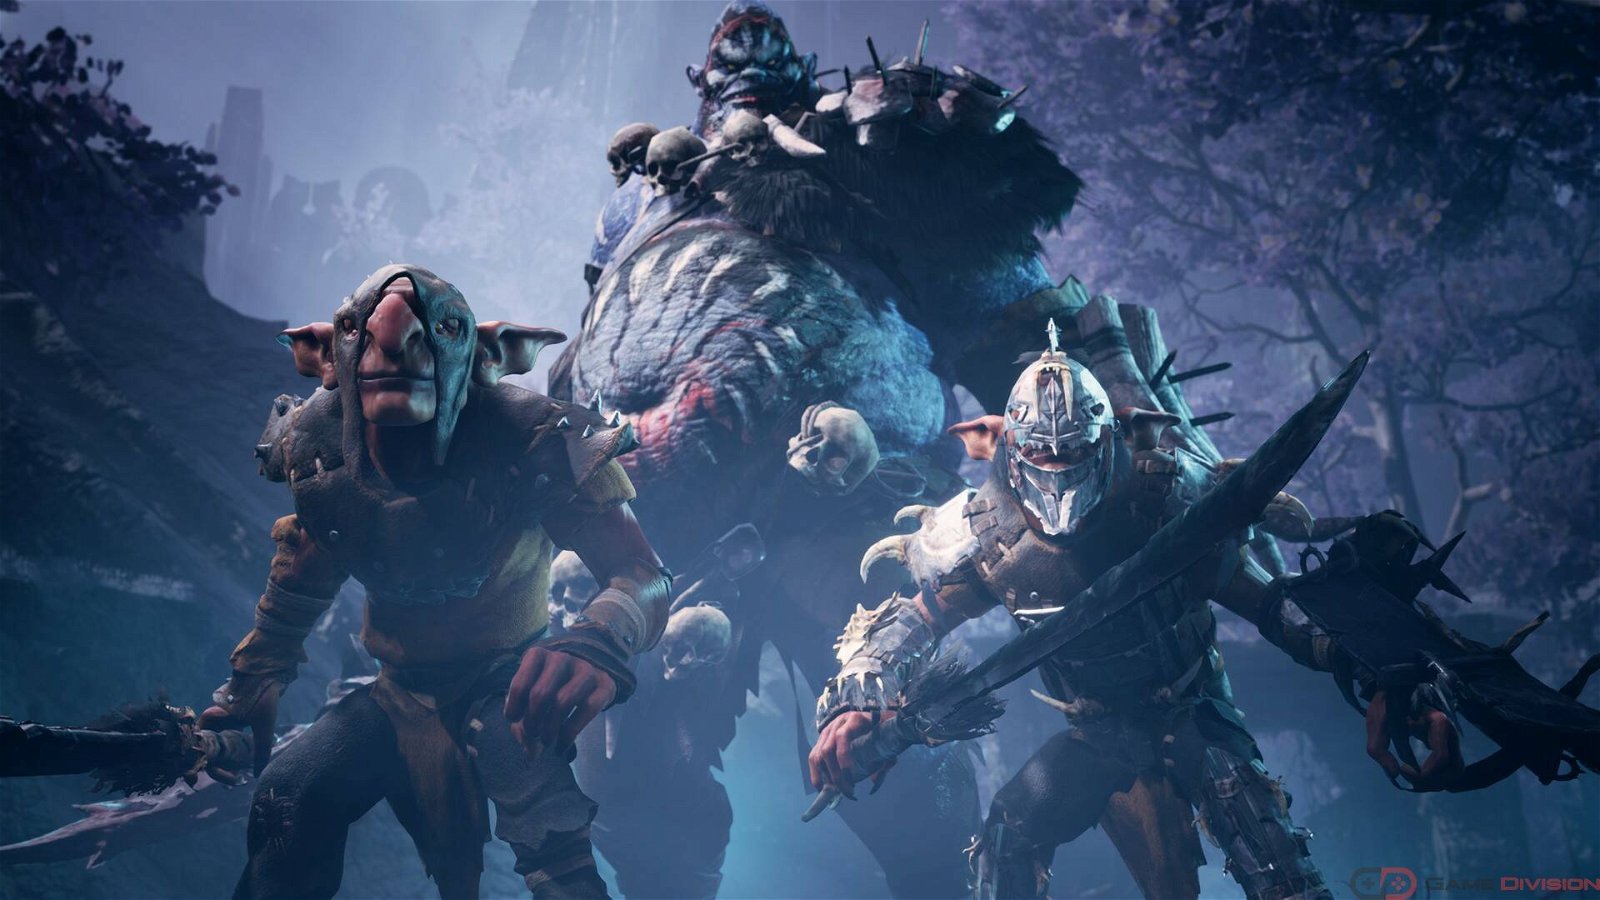 Immagine di Dark Alliance: nuovo gameplay mostra i quattro personaggi in azione